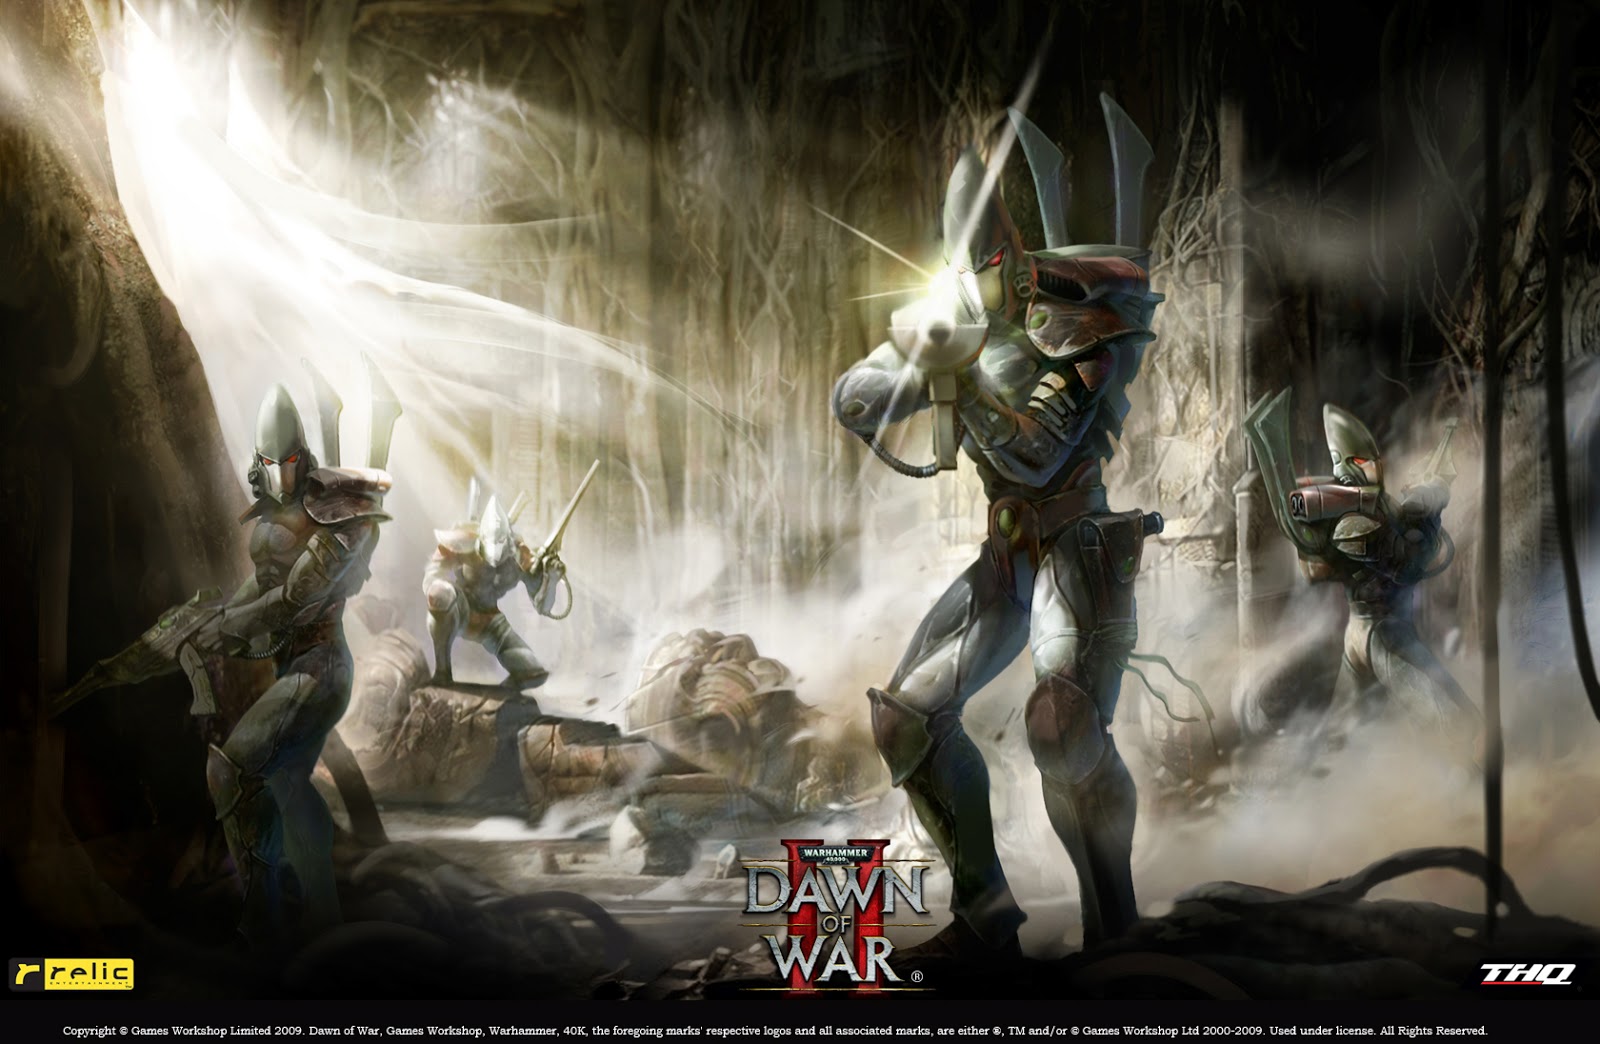 Eldar - Codex of Missed Chances? | Warhammer 40k, Fantasy, Wargames ...